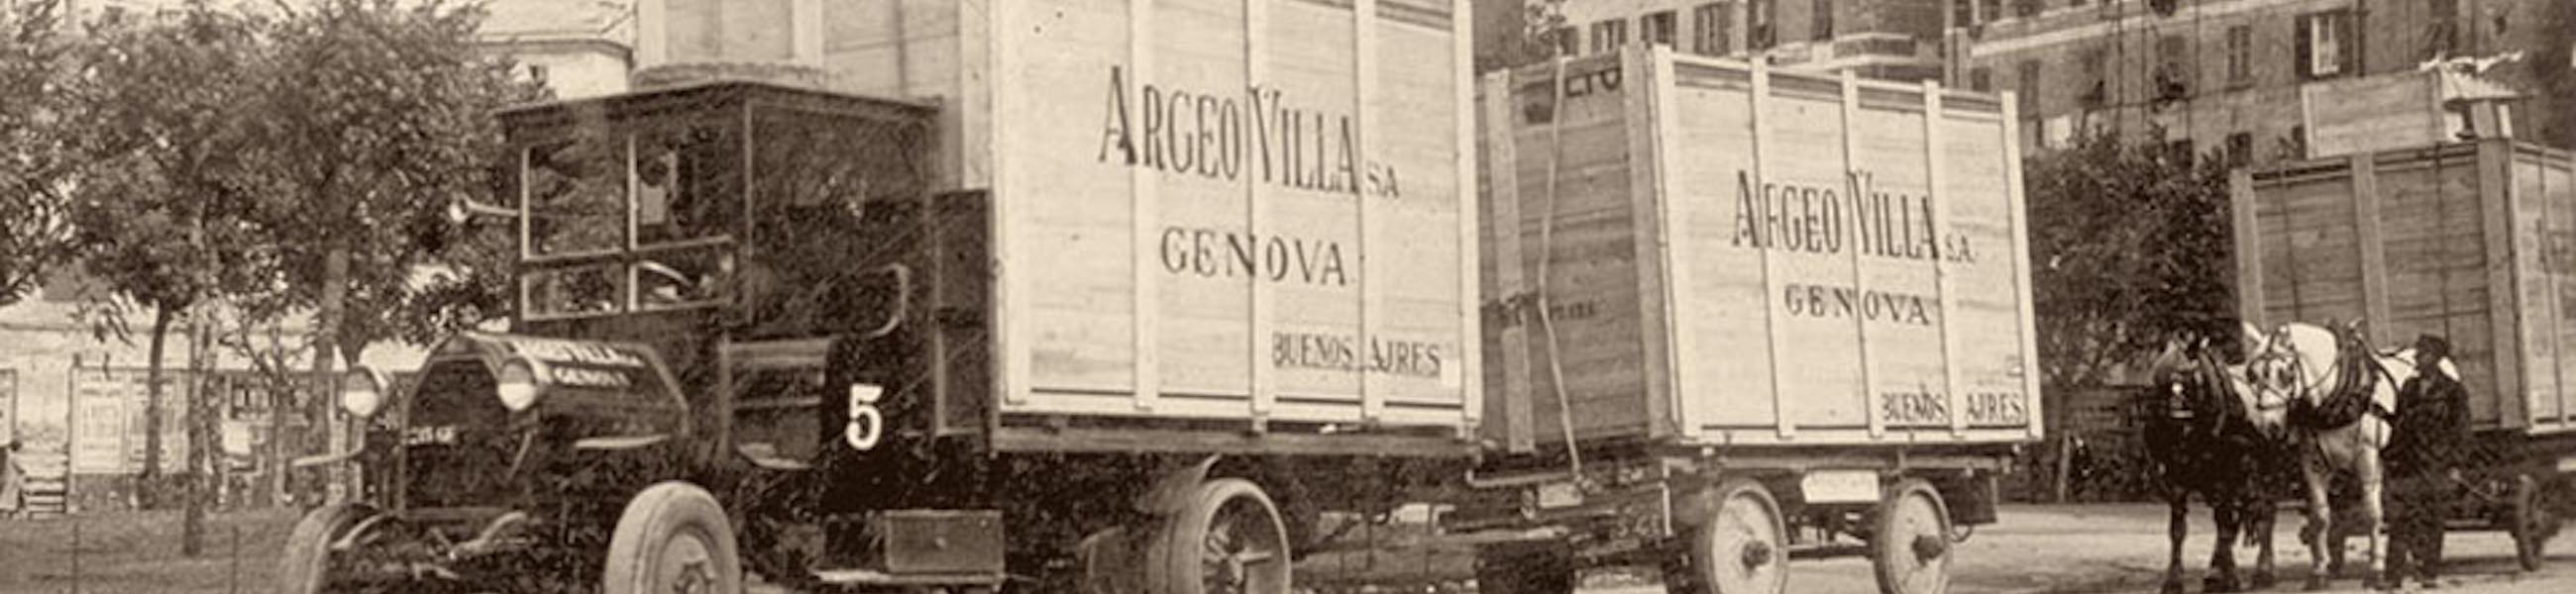 Argeo Villa: i traslochi di qualità a Genova dal 1894